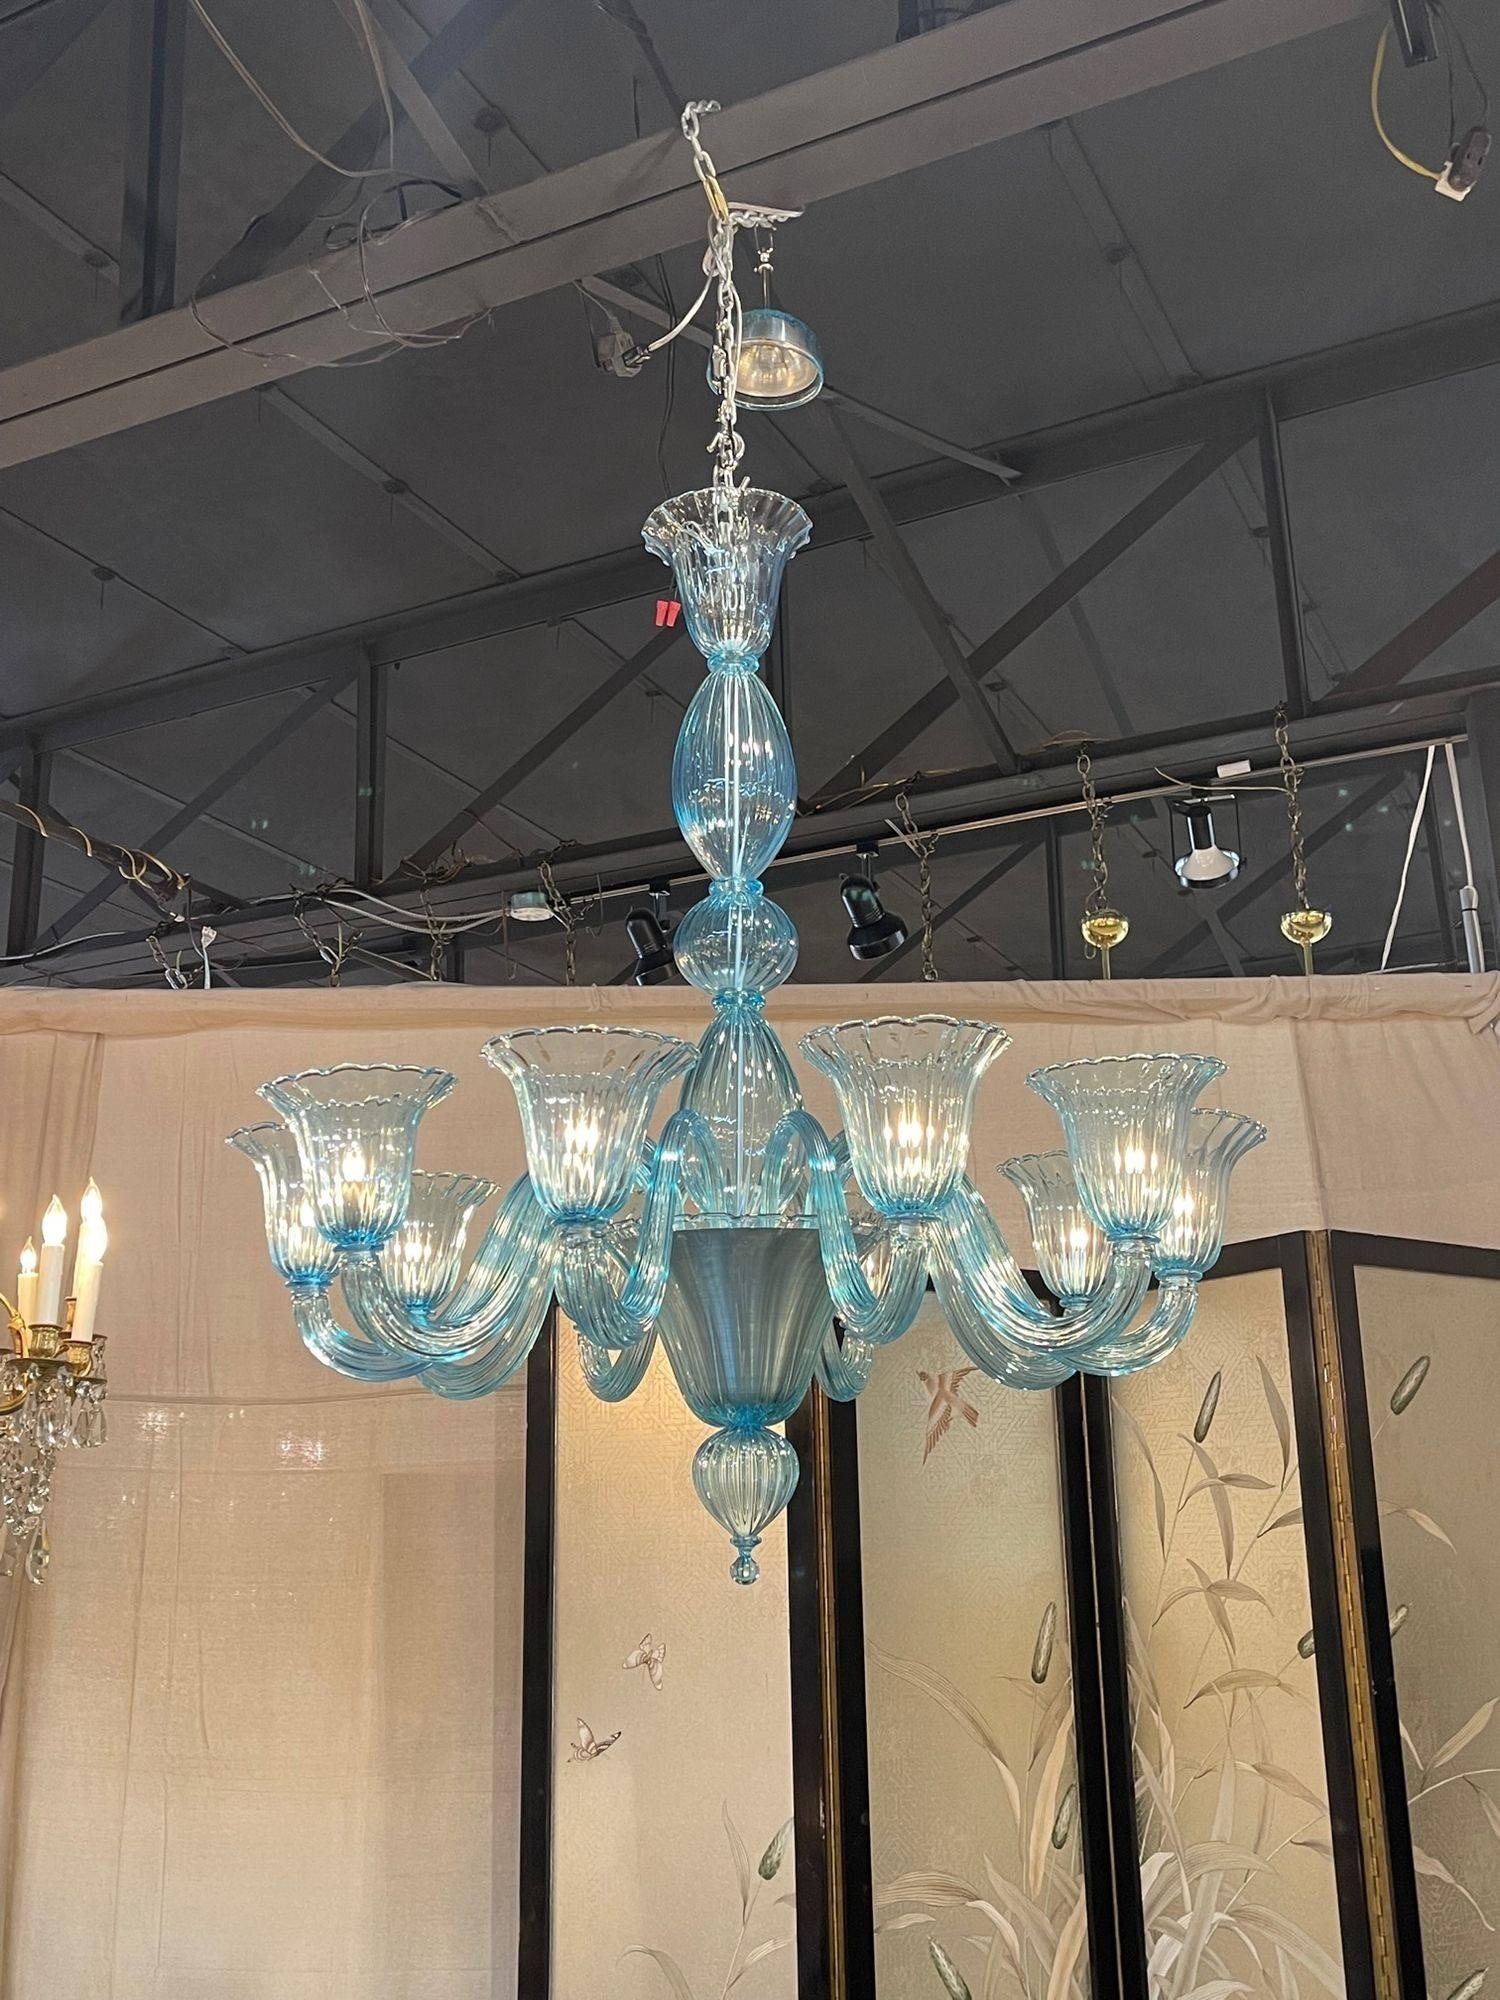 Moderner Kronleuchter aus blauem Murano-Glas mit 10 Lichtern.  Sehr hübsches, aquafarben schimmerndes Glas. Ein wahres Kunstwerk!!